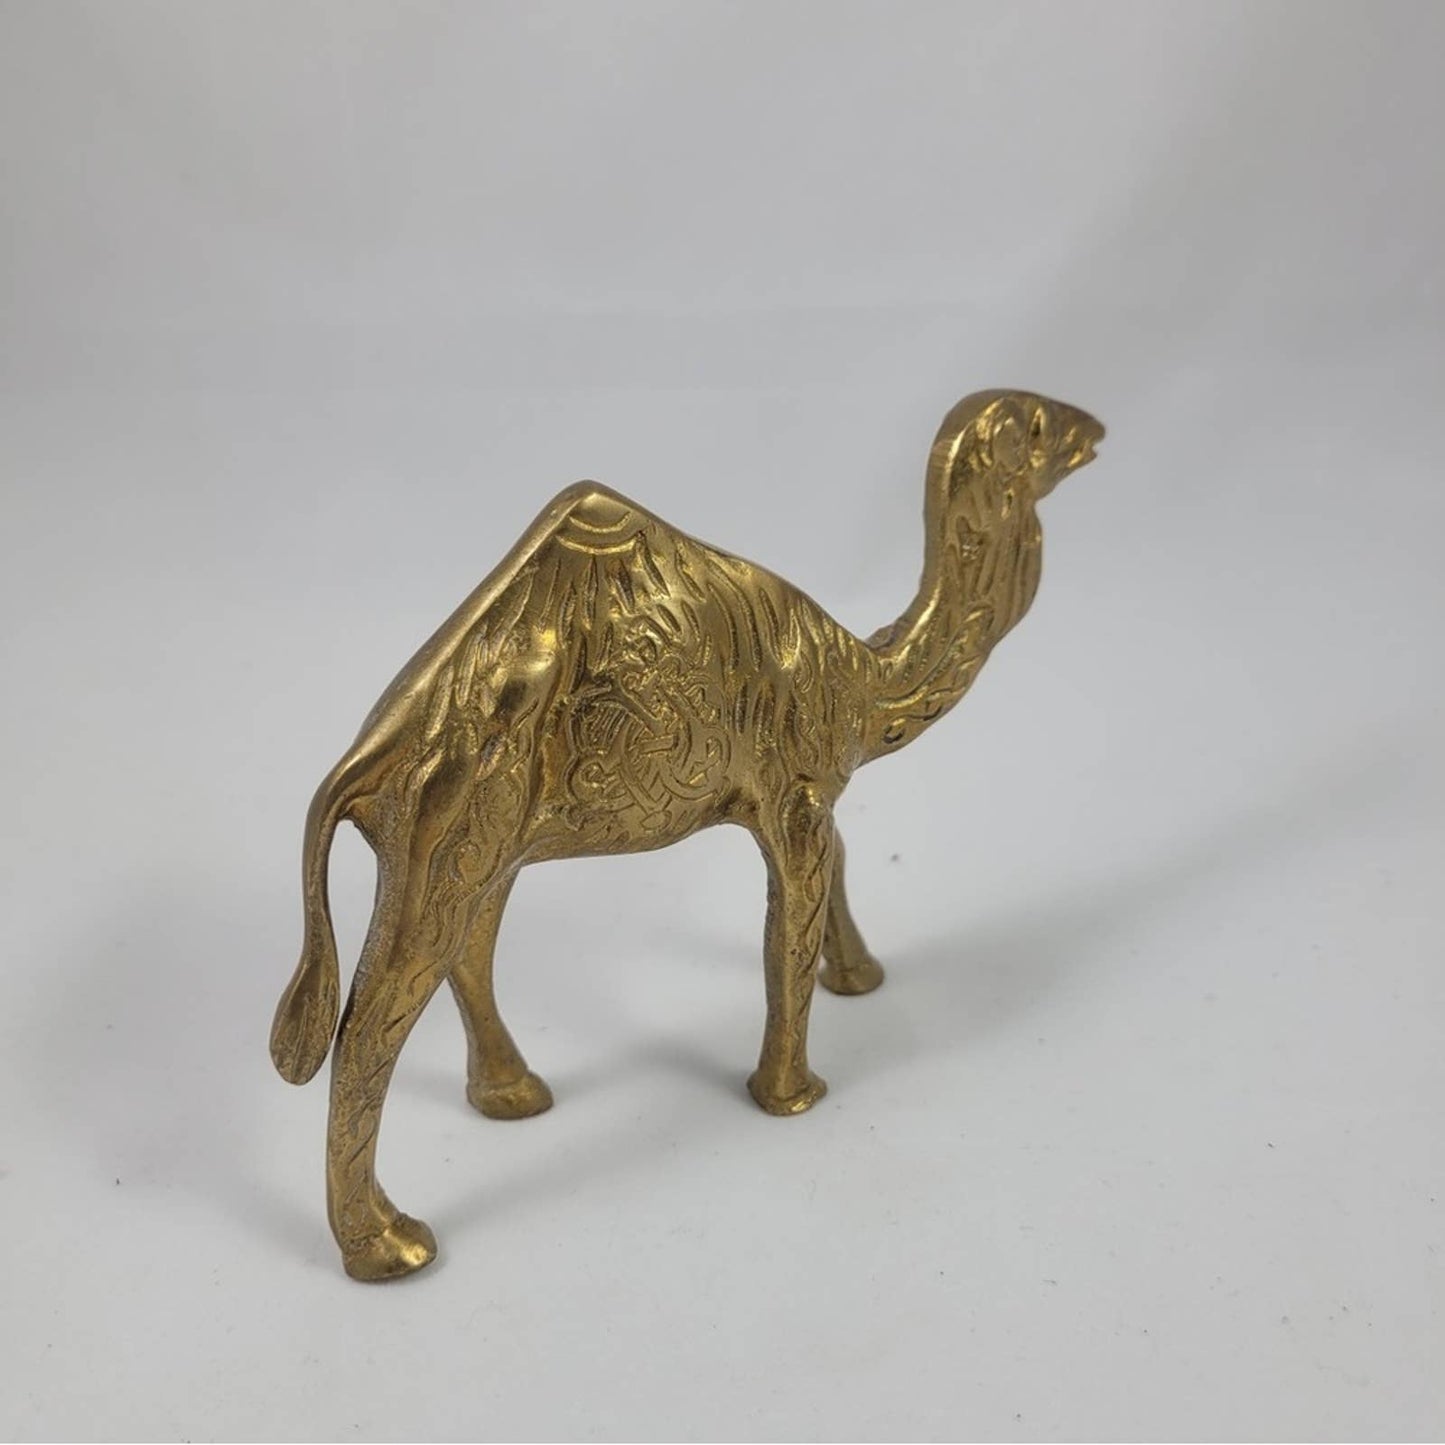 Vintage Brass Camel Nativity Christmas Story Winter Holiday Decor